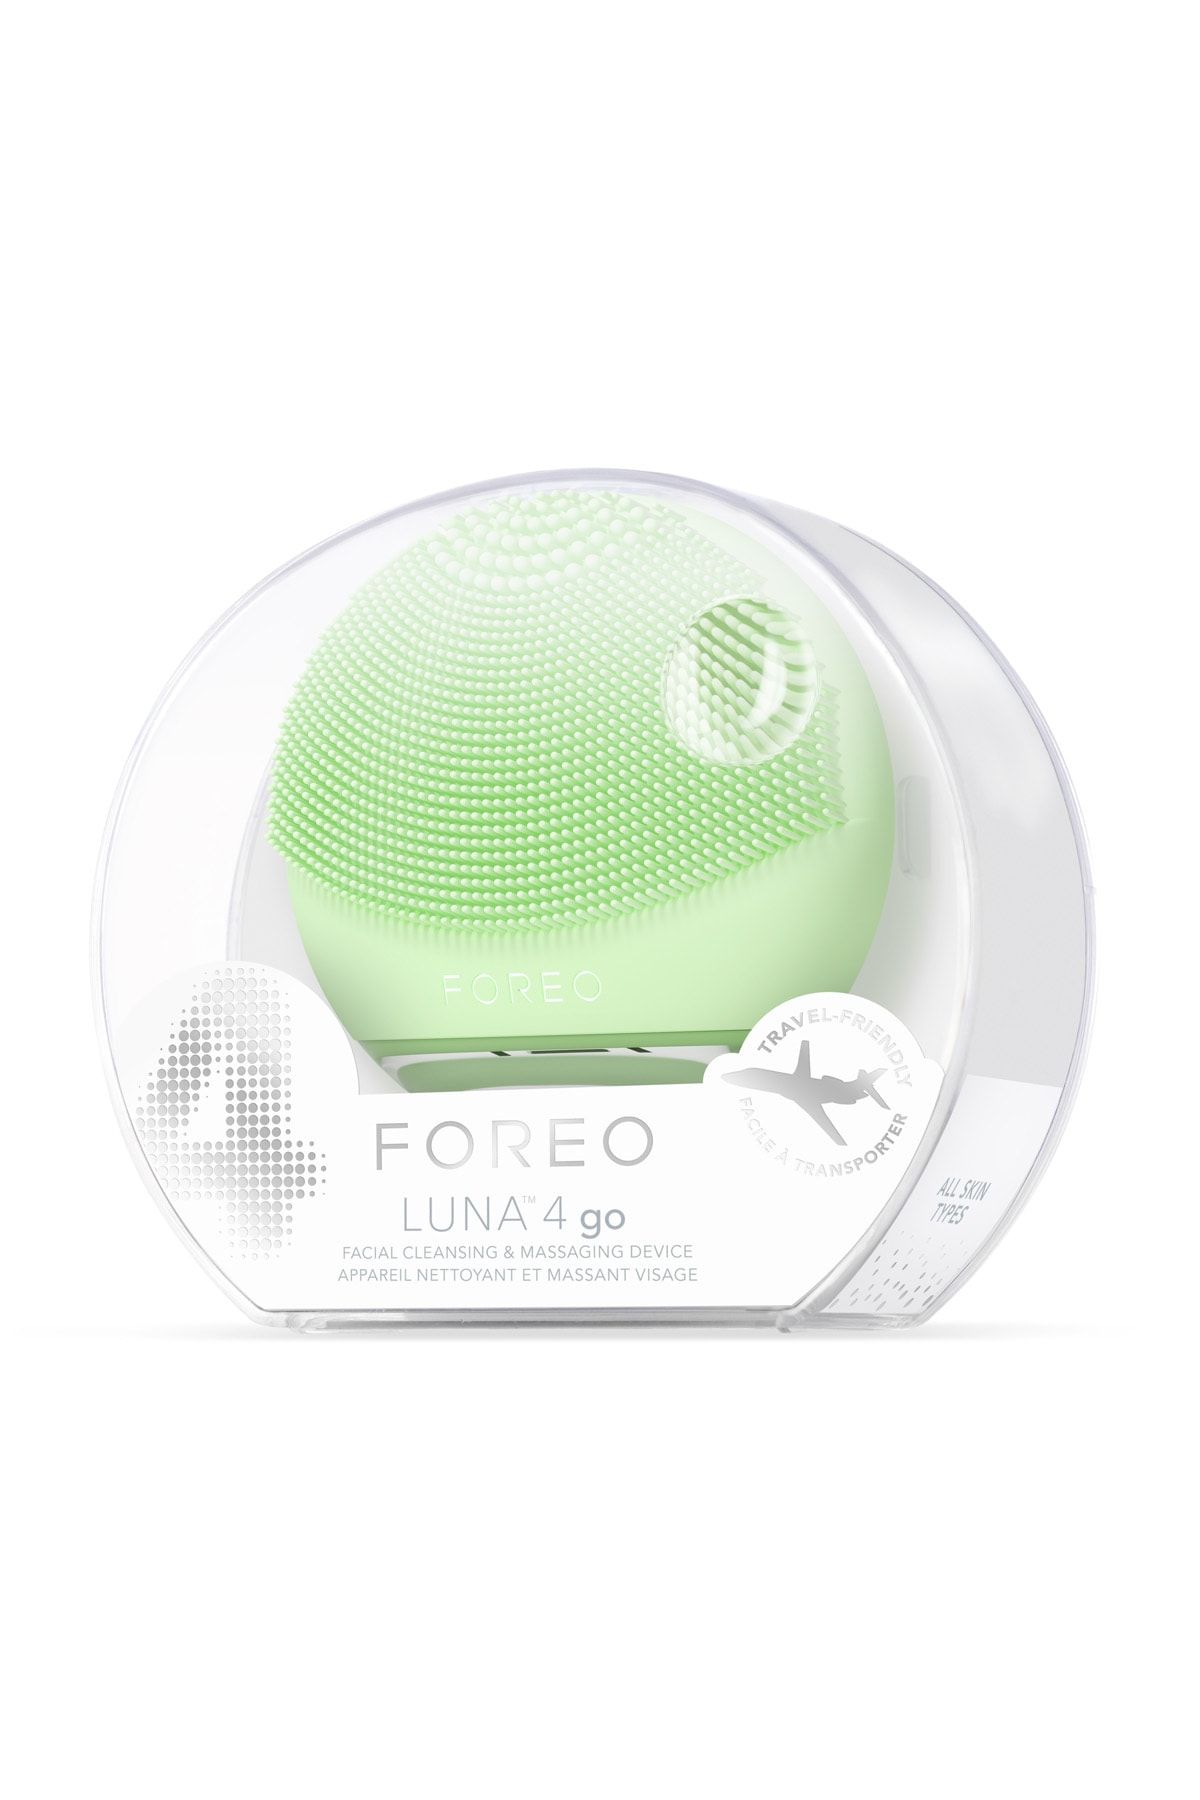 Foreo دستگاه تمیزکننده و تنگ کننده چهره Luna ™ 4 GO، پسته ای